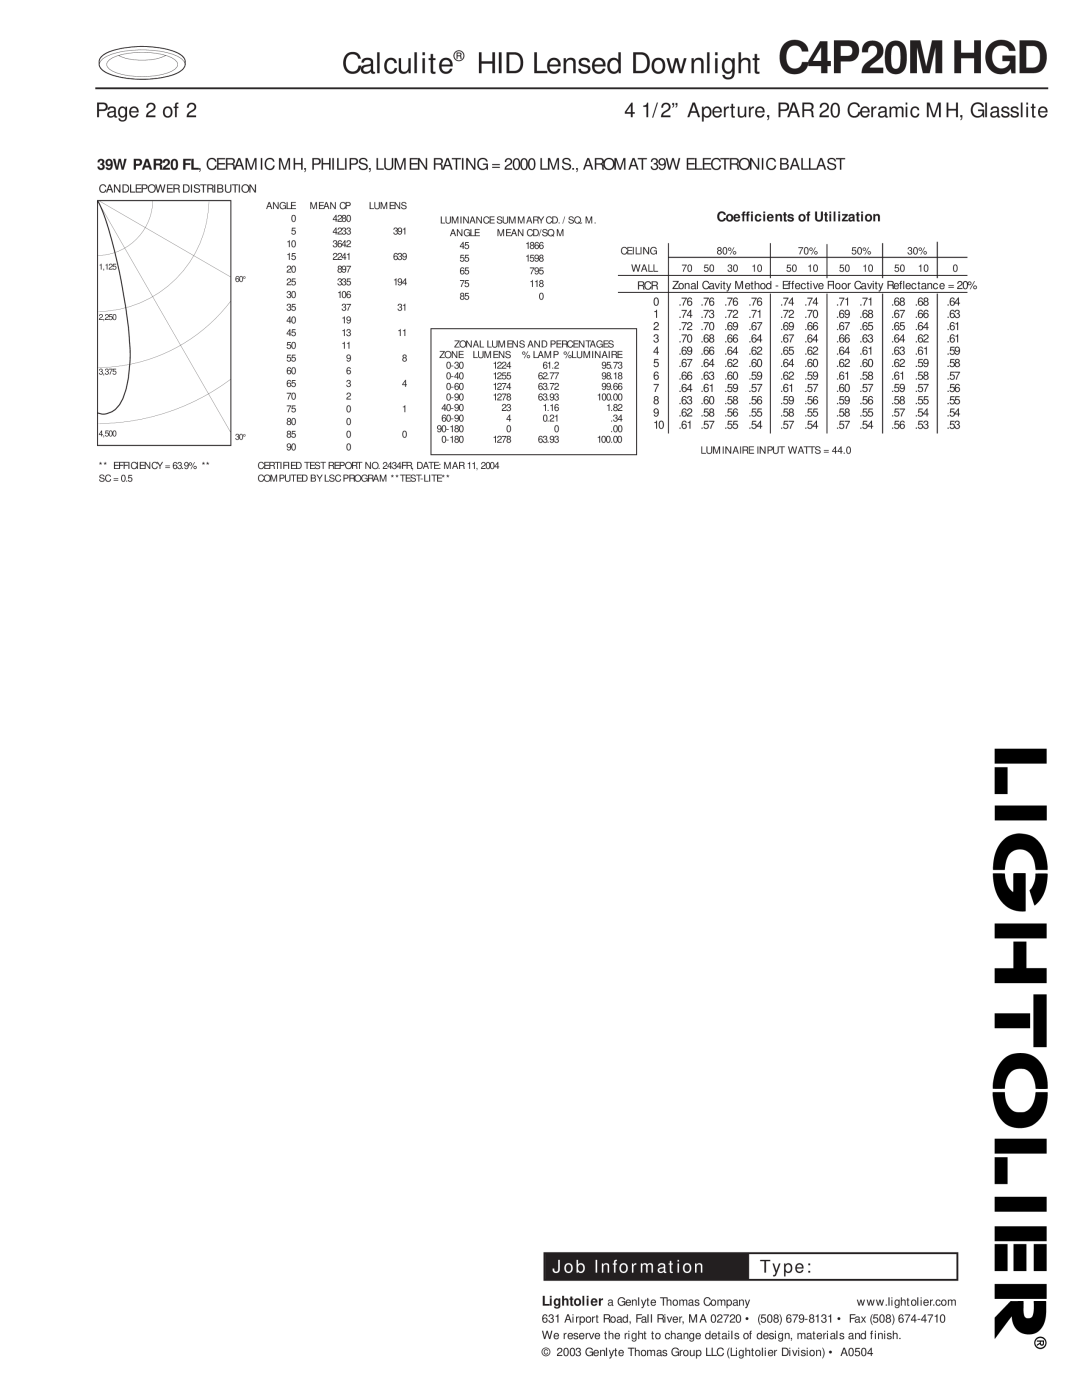 Lightolier Page 2 of, Calculite HID Lensed Downlight C4P20MHGD, 4 1/2” Aperture, PAR 20 Ceramic MH, Glasslite, Type 